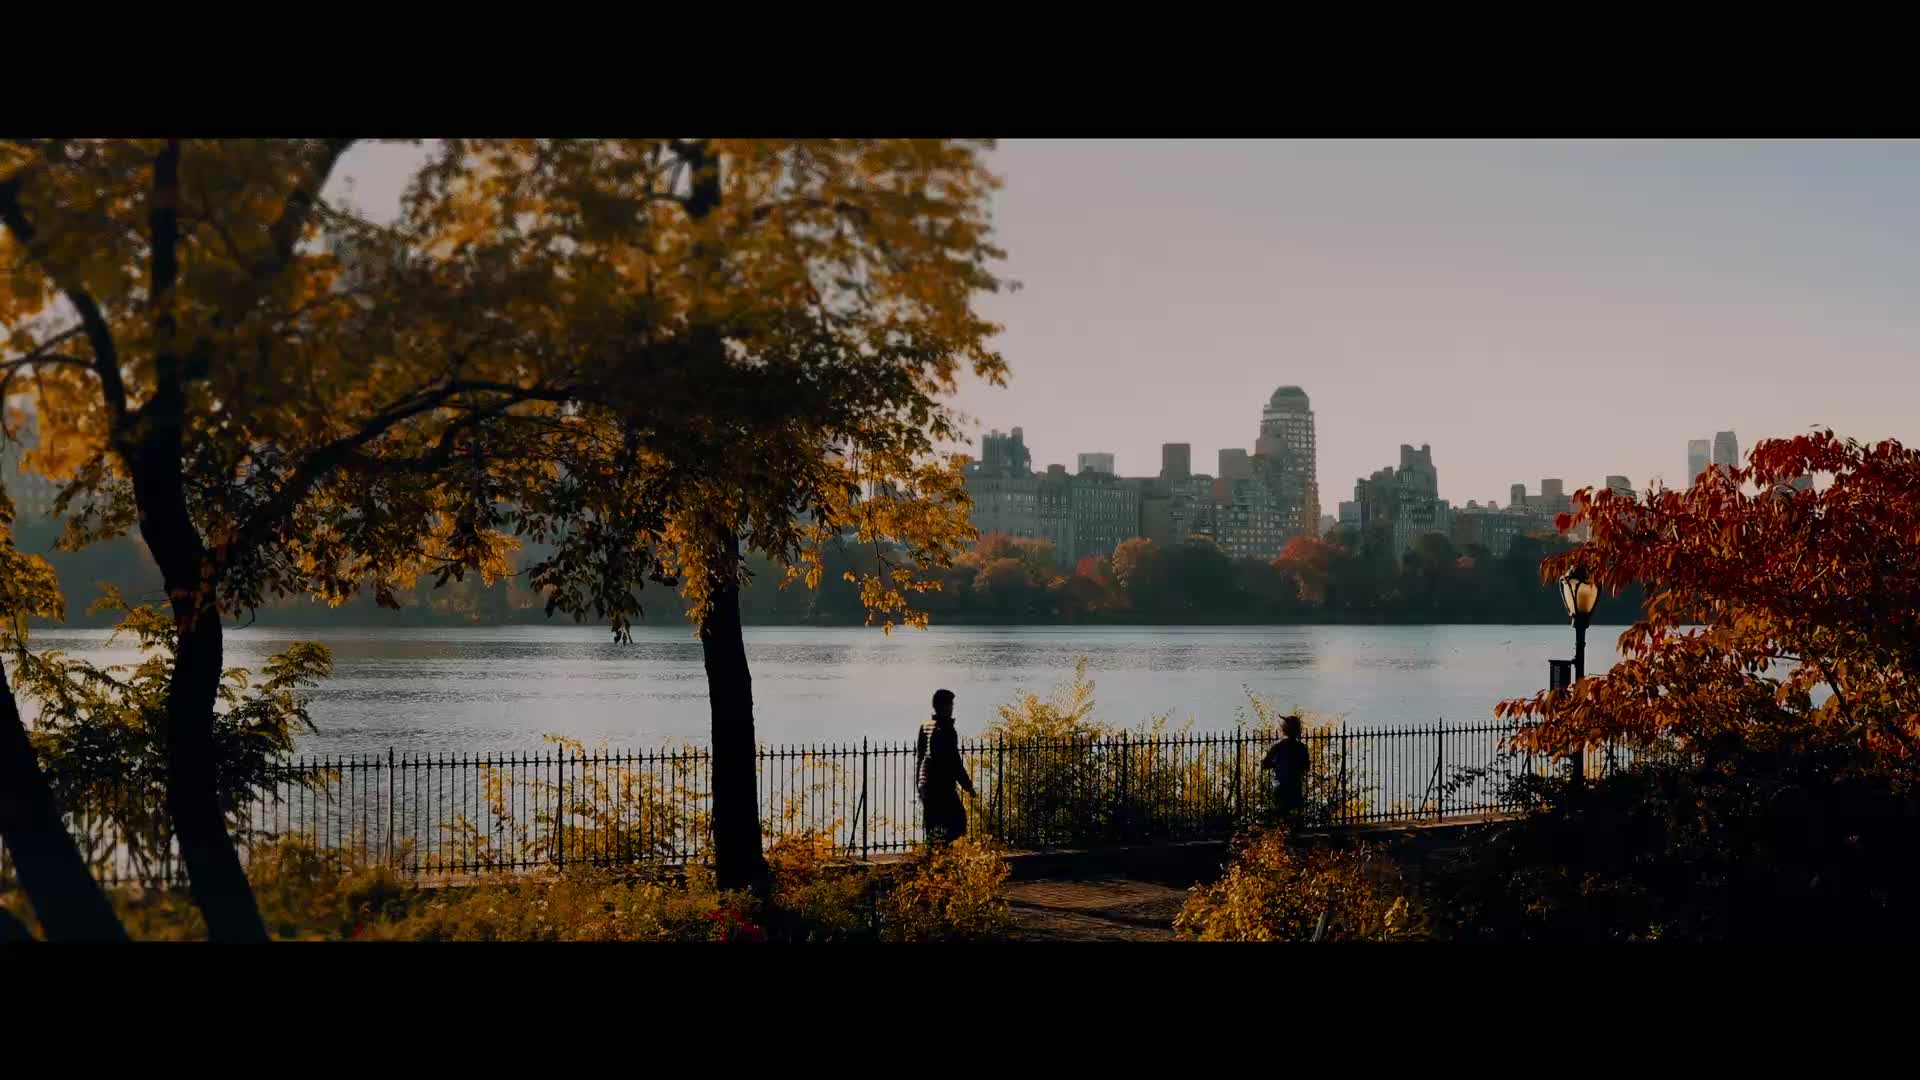 Vraždy New York S01E02 Vražda v Central Parku